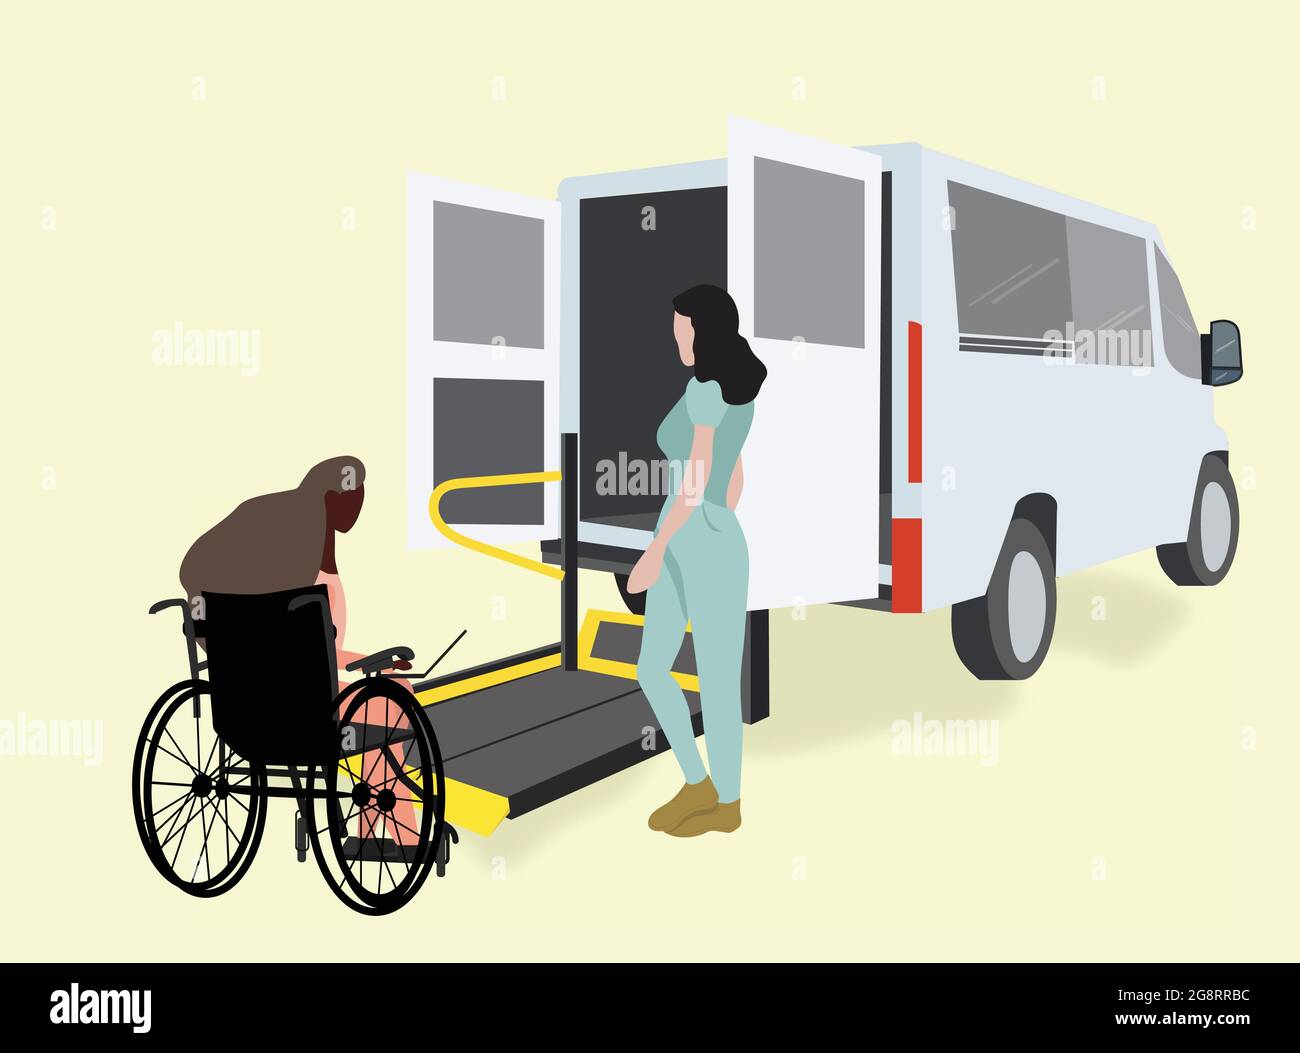 Volunteer helfende junge behinderte Frau im Rollstuhl, die am Laptop an rollstuhlgerechten Transportmitteln mit Zugangsrampe für behinderte Menschen arbeitet i Stock Vektor